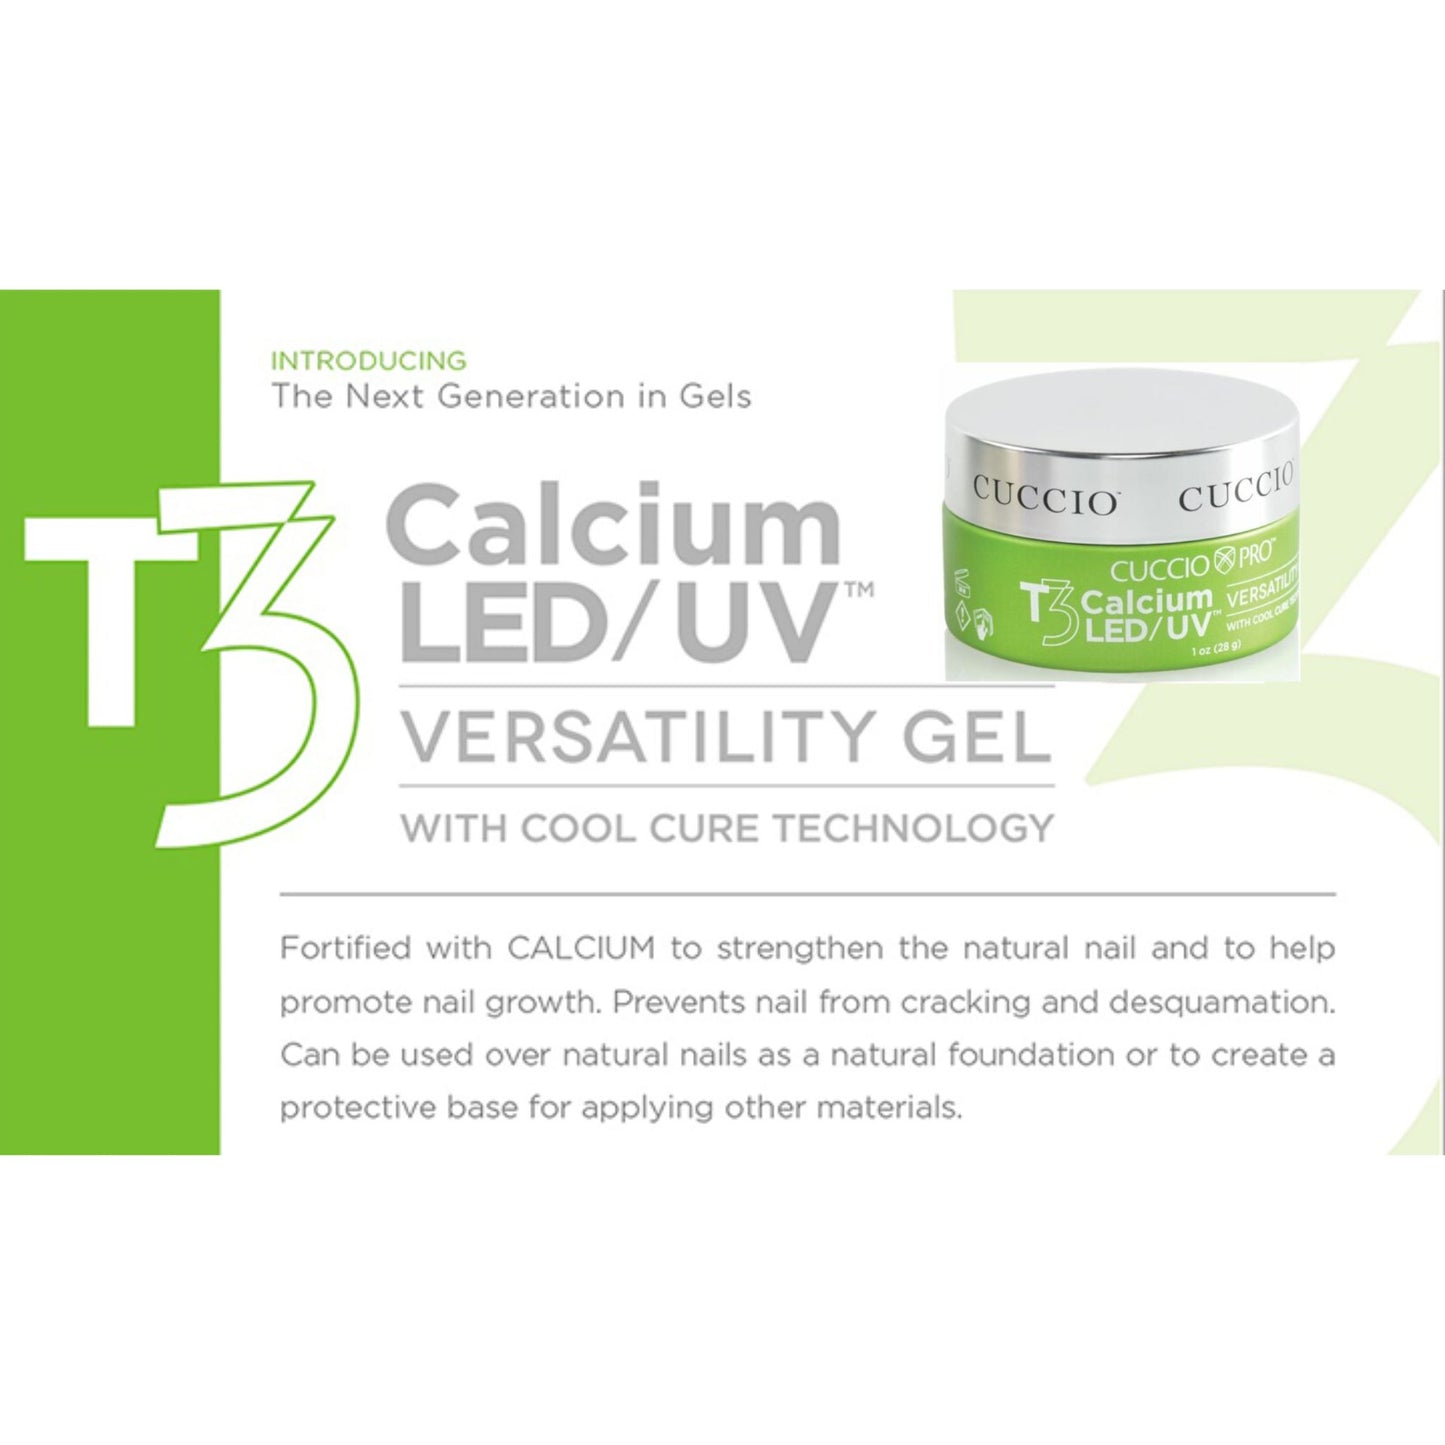 T3 LED/UV Calcium Versatility Gel - Self Leveling